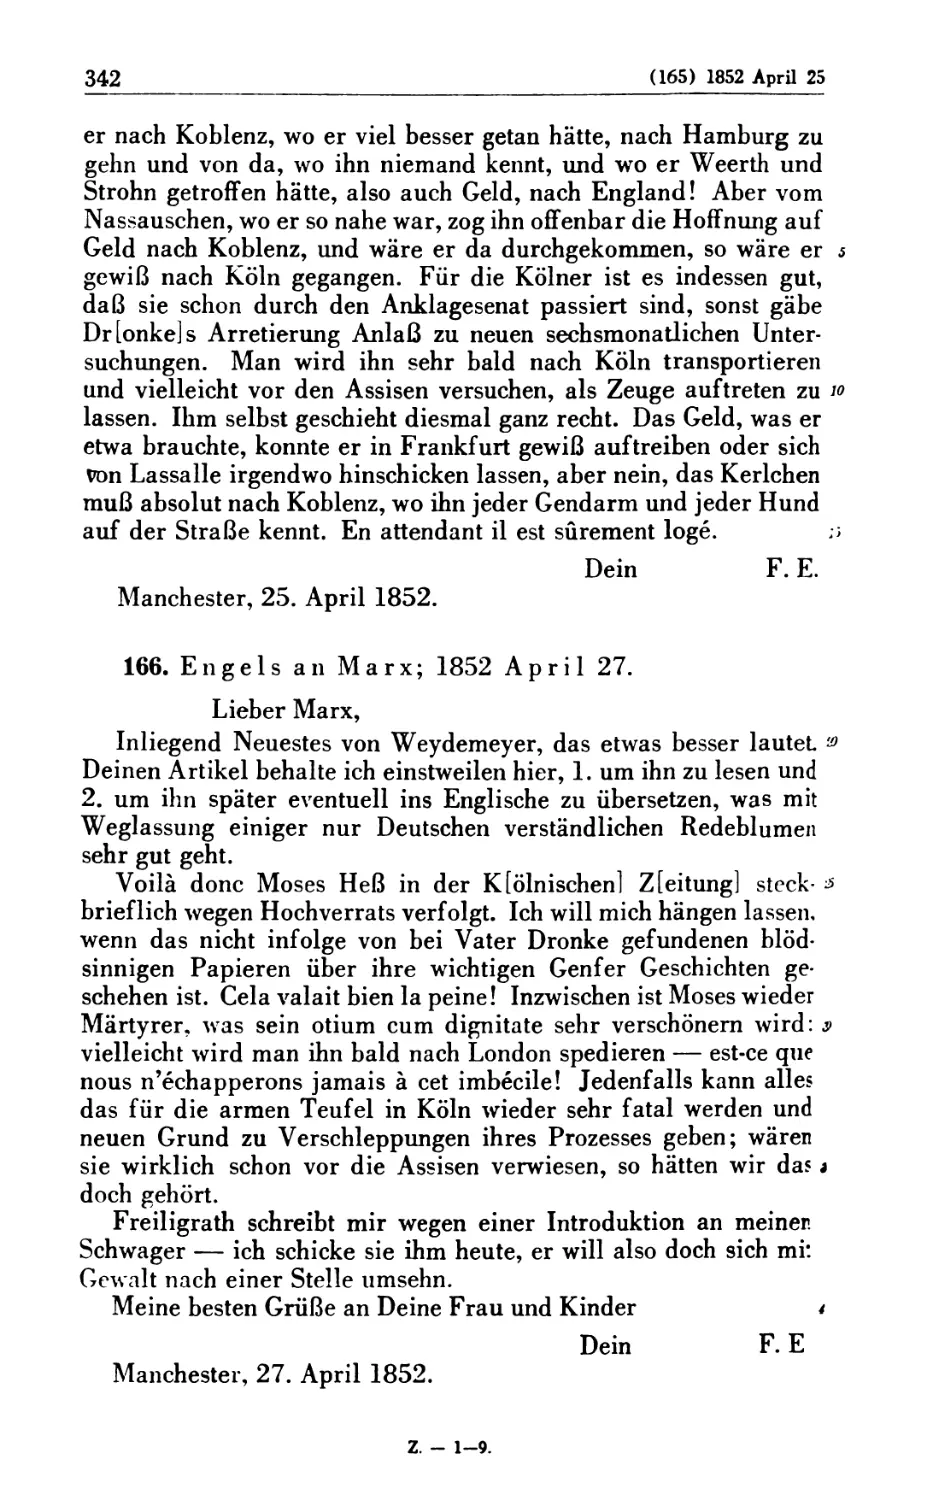 166. Engels an Marx; 1852 April 27